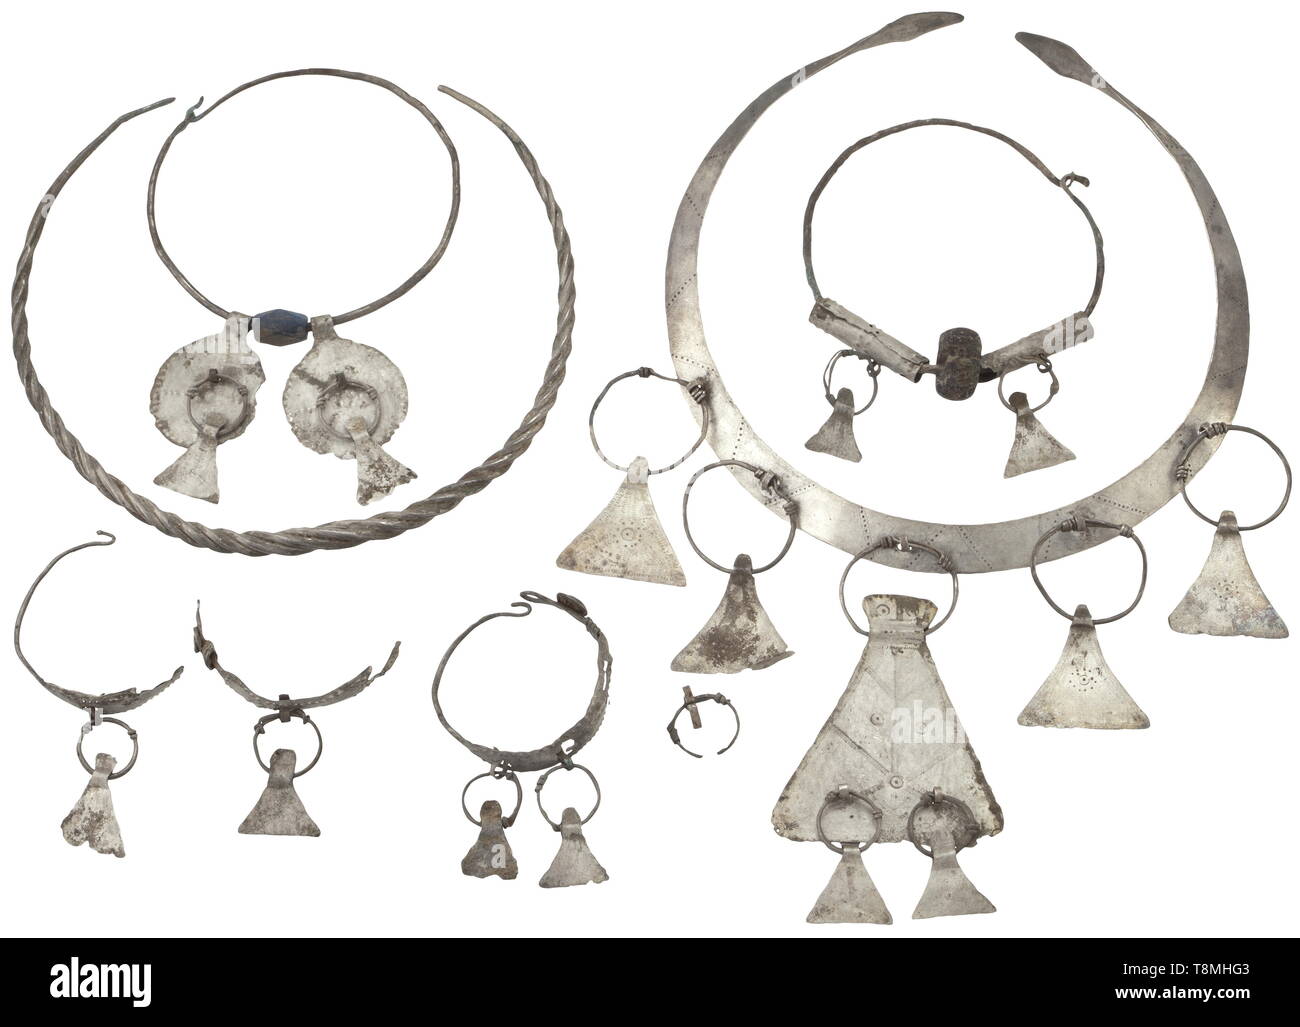 Eine Südosteuropäische Silber Schmuck, späten Eisenzeit, 2./1. Jahrhundert v. Chr. eine Halskette von Ribbon-geformte Blatt Silber mit geprägtem Dekoration und Lanzettförmig klemmen. Es sieben Hatchet - geformte Anhänger, drei von ihnen mit jedem anderen verbunden ist. Darunter ein twisted Halskette, zwei silberne Ringe mit Glasperlen und Schmuck Anhänger aus Silber sowie zwei Ohrringe, jeder von ihnen mit zwei der ursprünglich drei Anhänger, erhalten wurde. Durchmesser 4 bis 15 cm. Provenienz: München private Sammlung, während t erworben, Additional-Rights - Clearance-Info - Not-Available Stockfoto